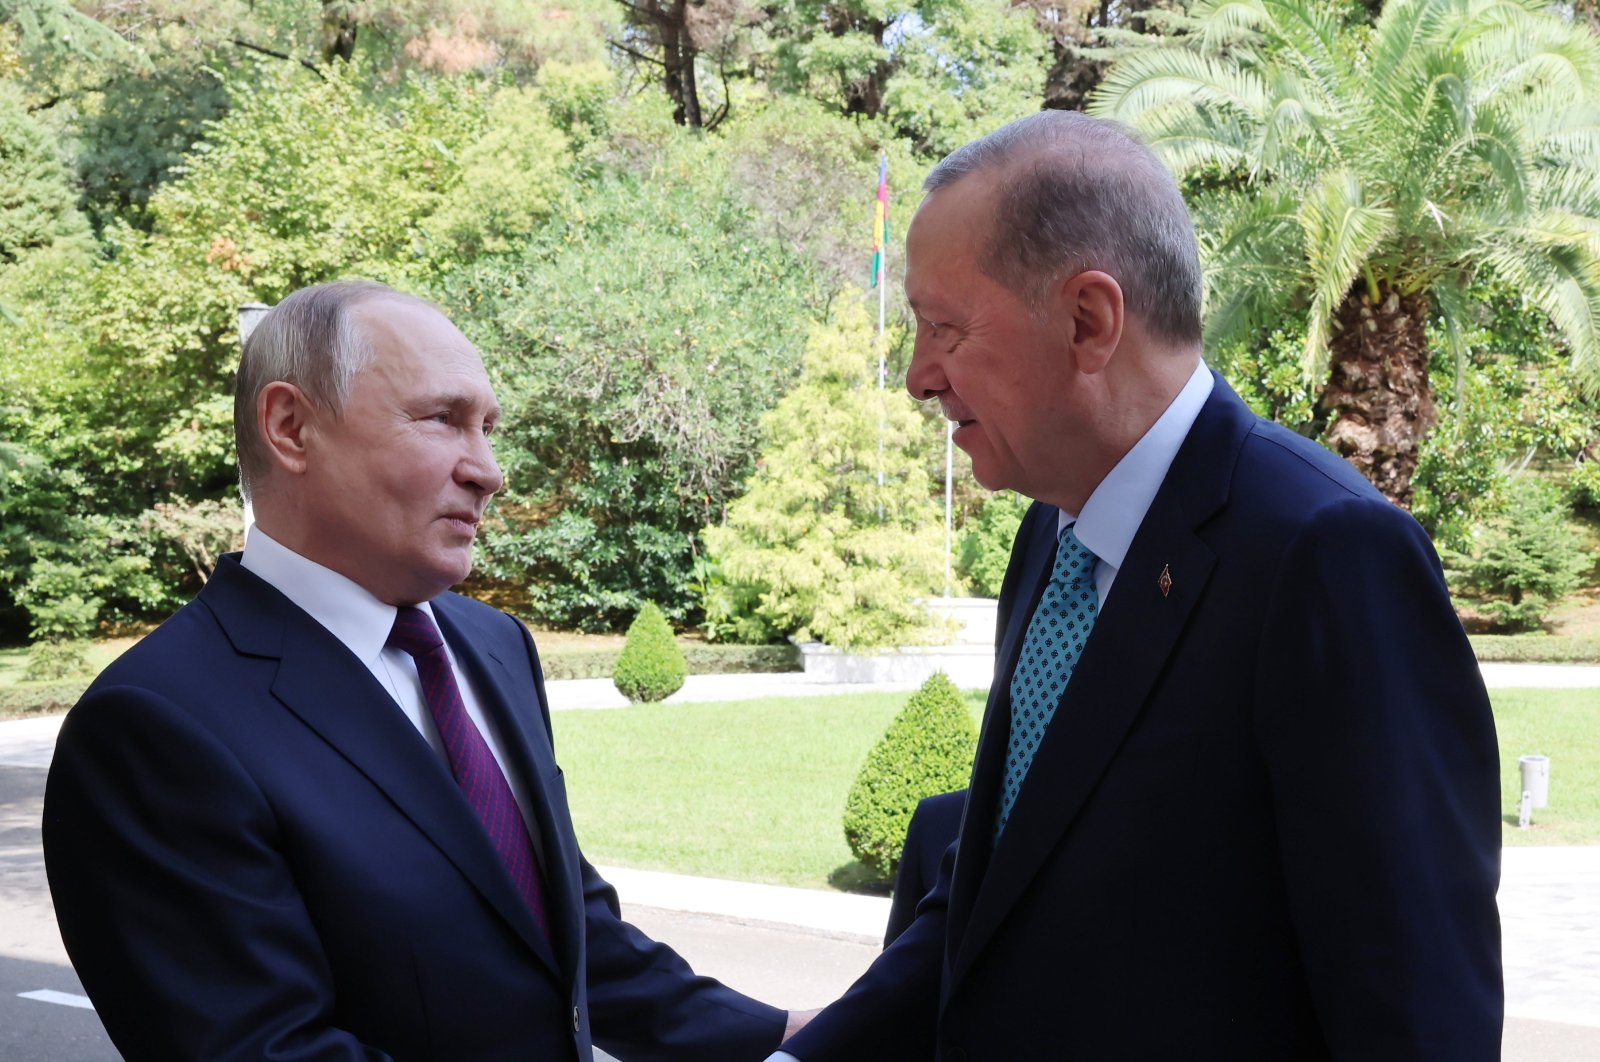 Erdoğan meets Putin in bid to unblock grain deal deadlock